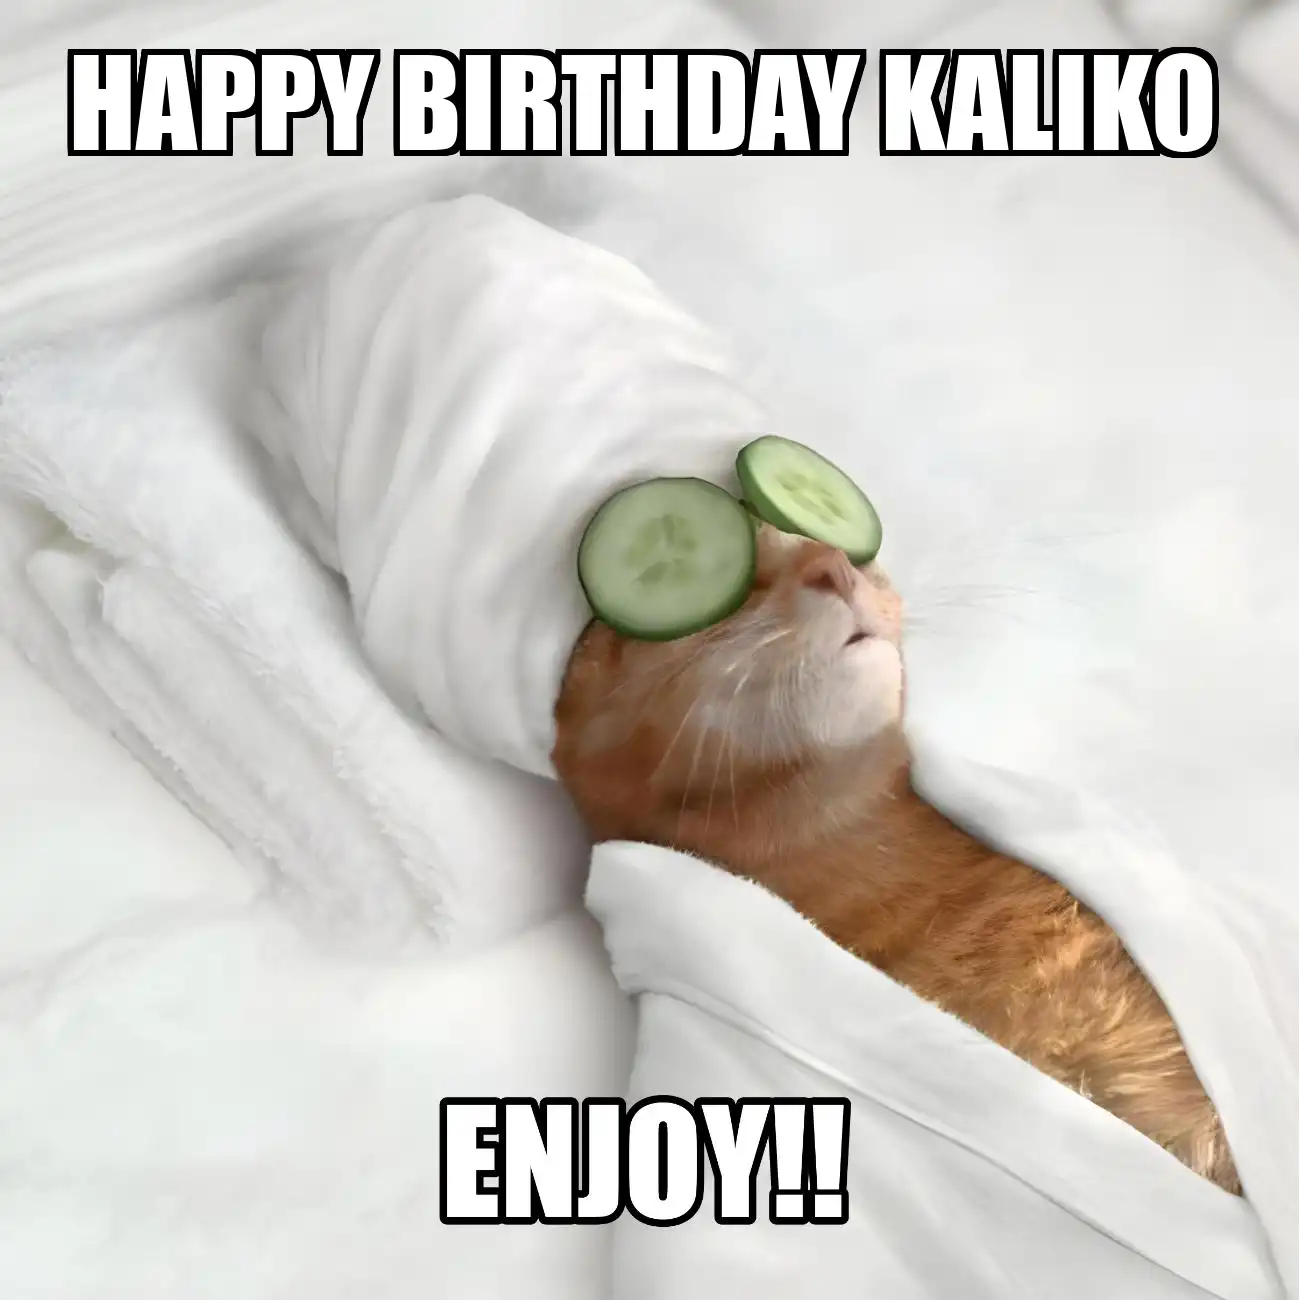 Happy Birthday Kaliko Enjoy Cat Meme